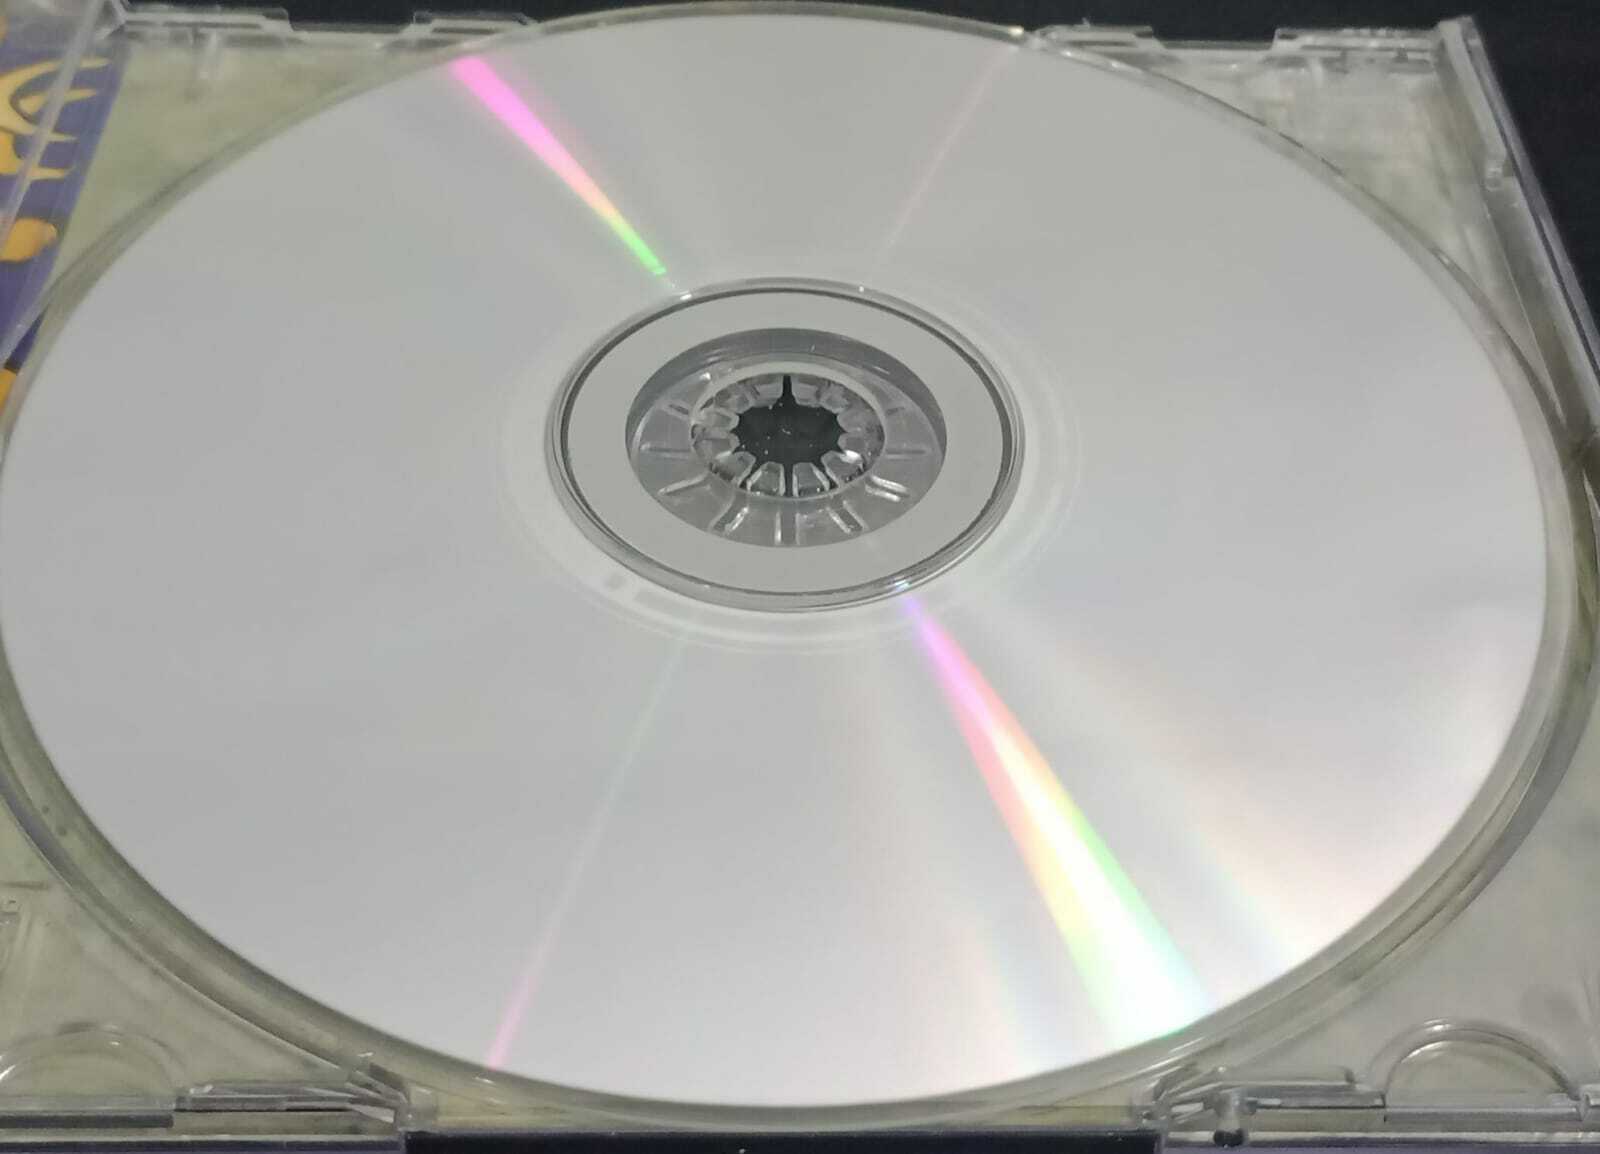 CD - Paralamas do Sucesso Os - Nove luas